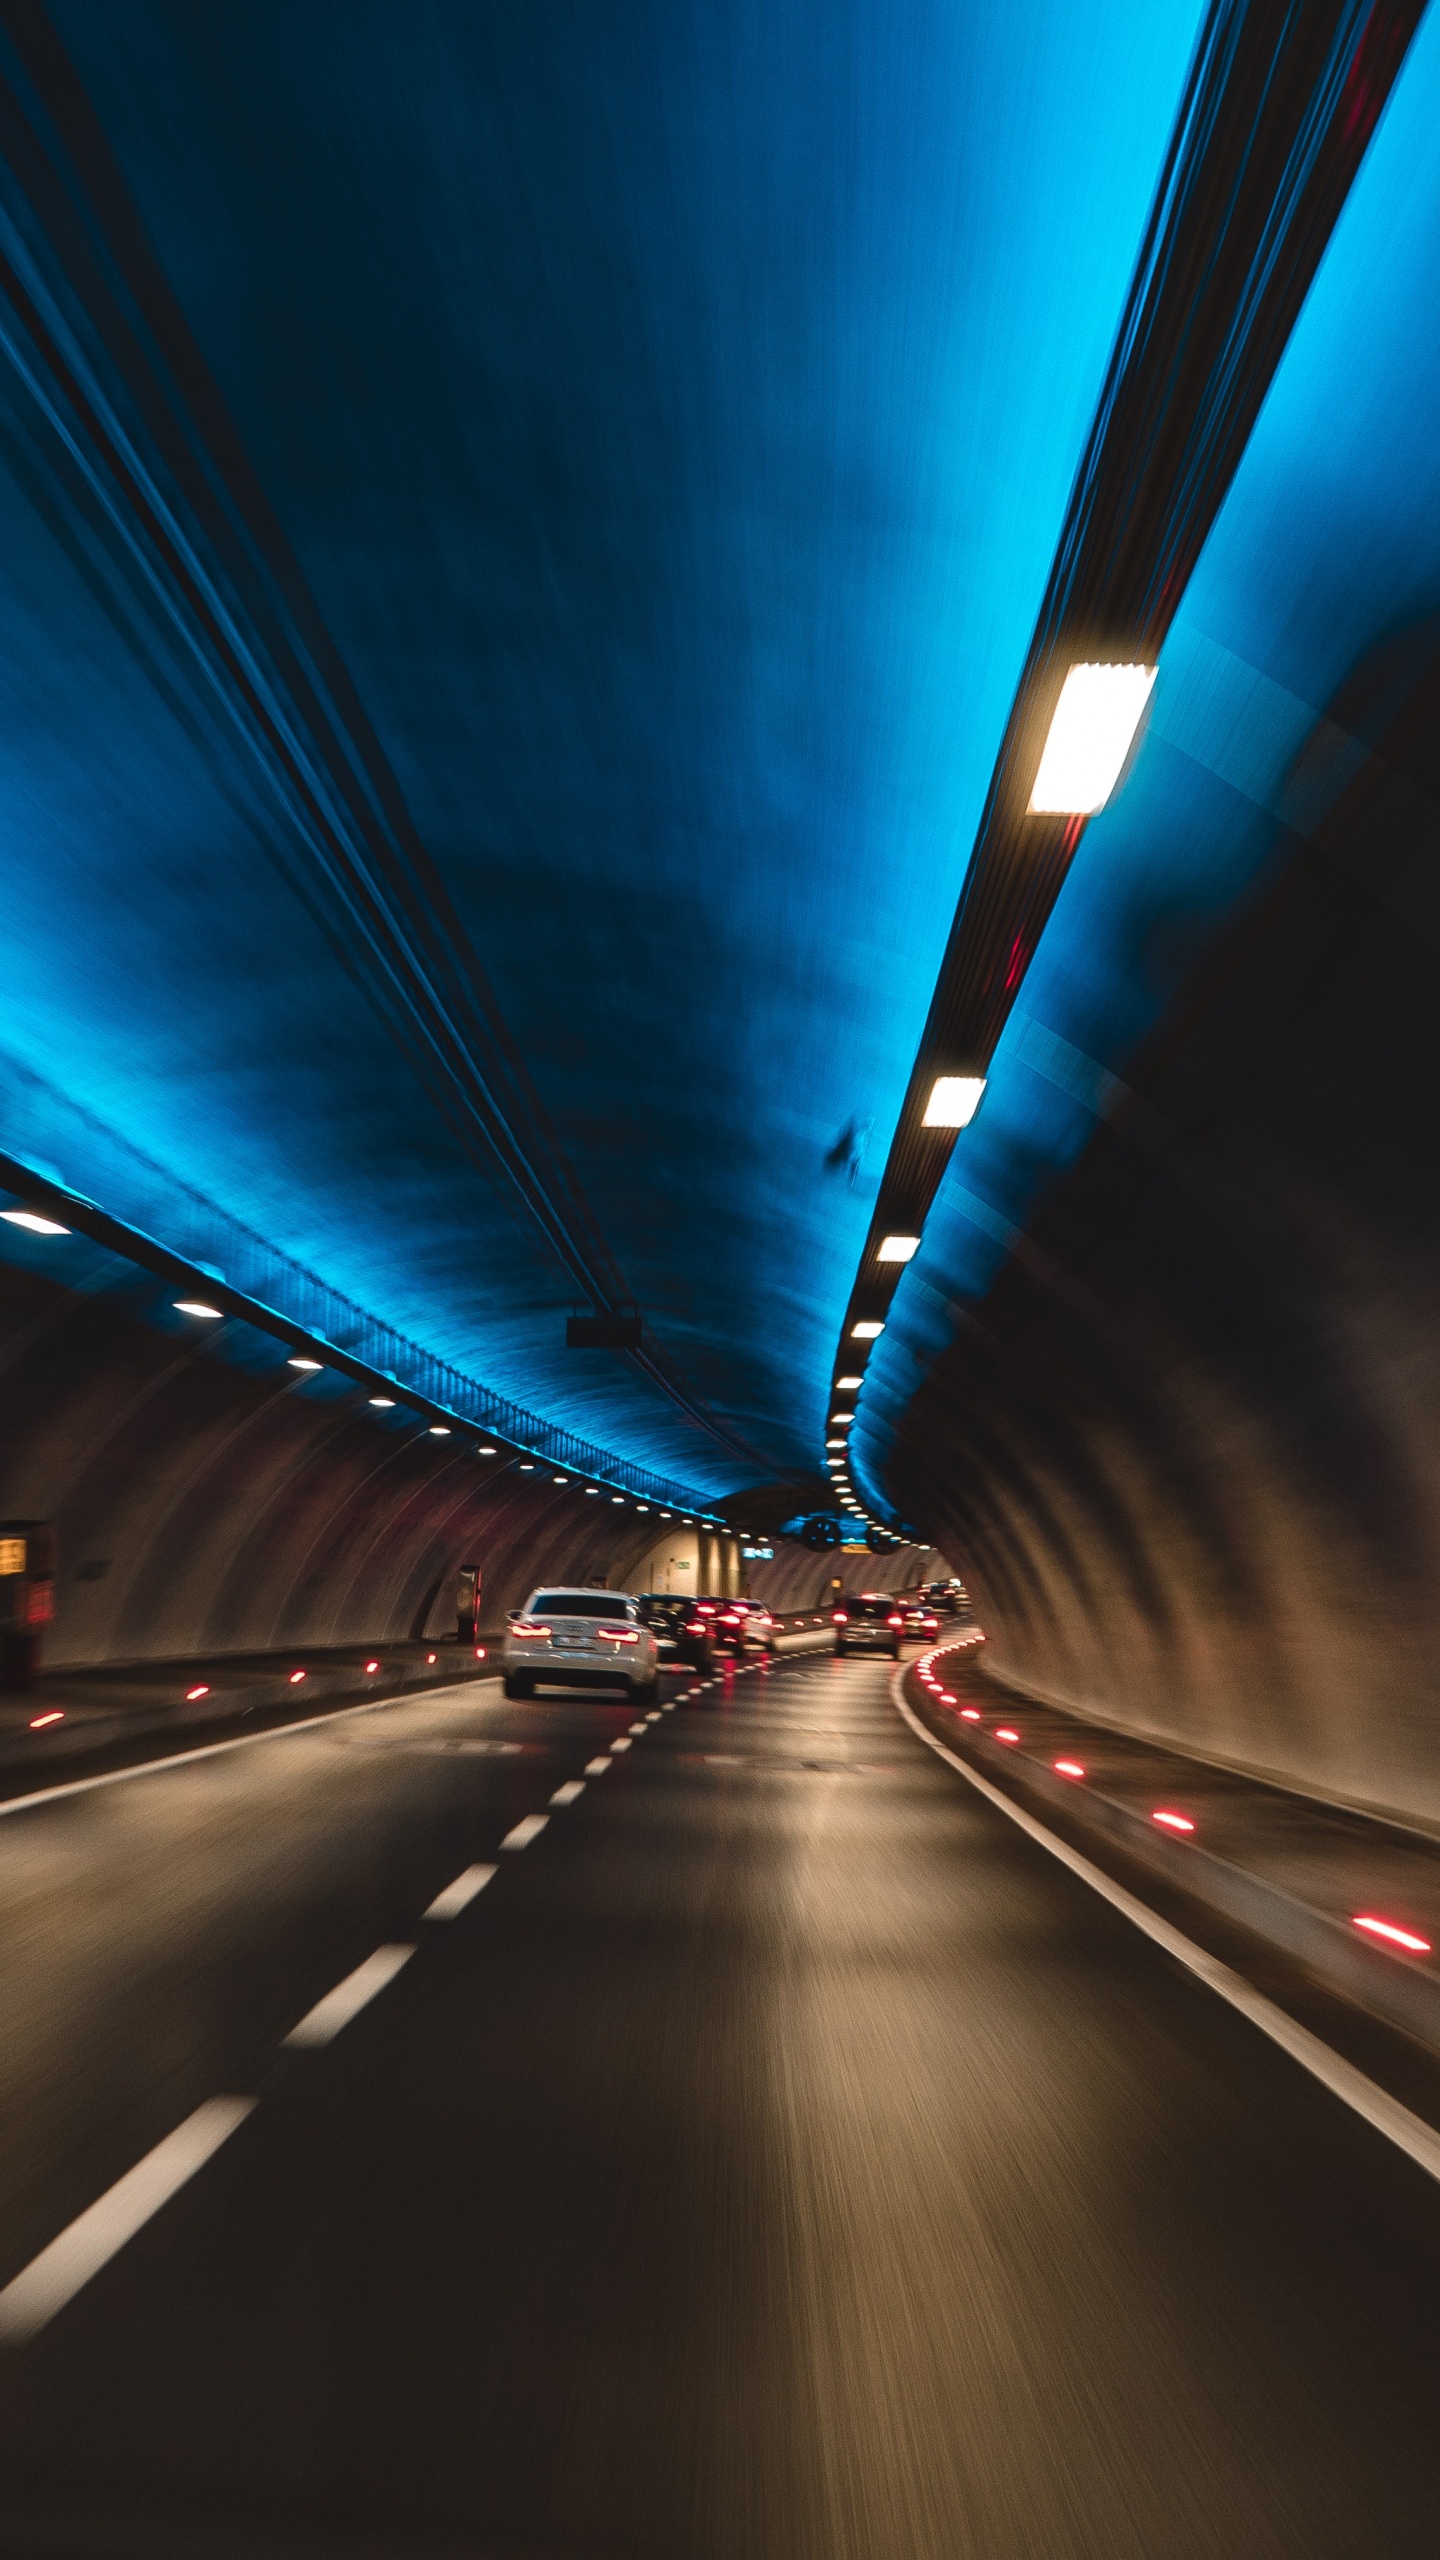 隧道, 高速公路, 车道, 光, 基础设施 壁纸 1440x2560 允许